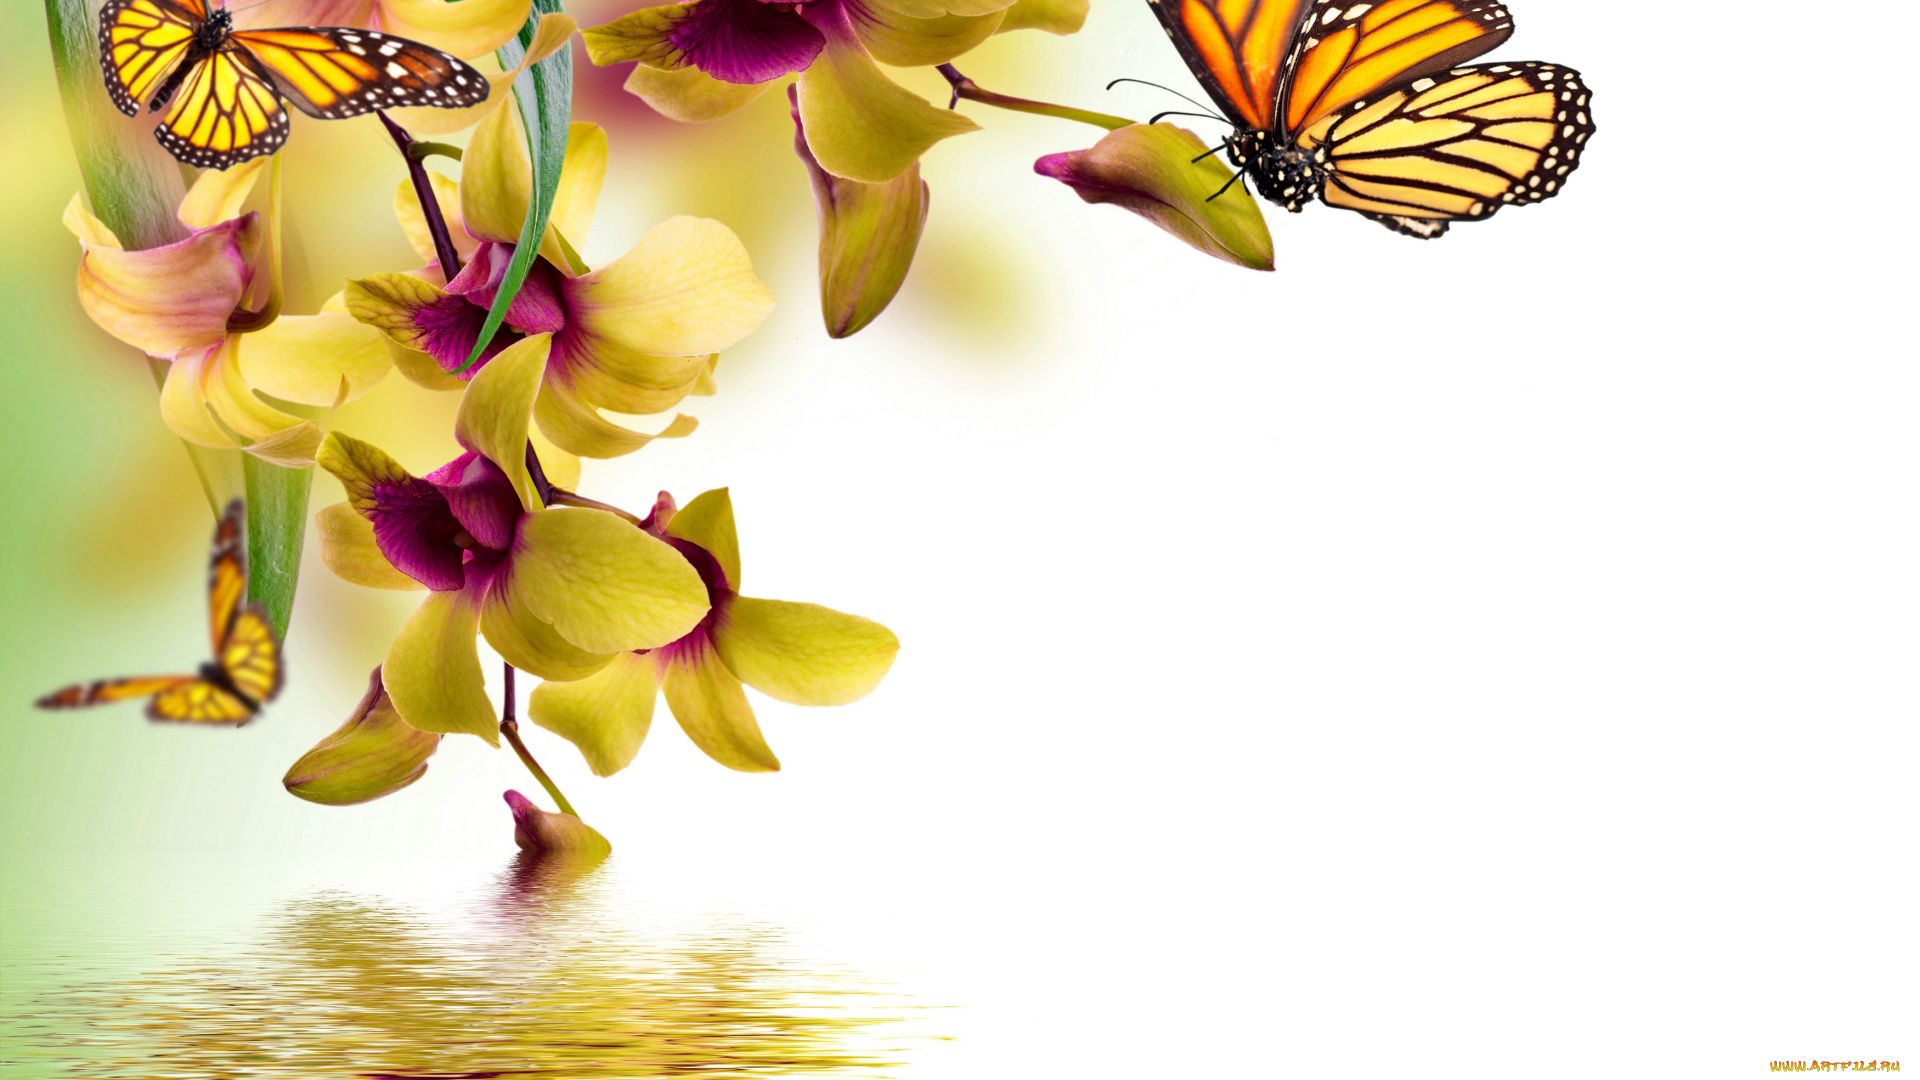 разное, компьютерный, дизайн, orchid, water, reflection, spring, yellow, flowers, beautiful, butterflies, орхидея, цветы, бабочки